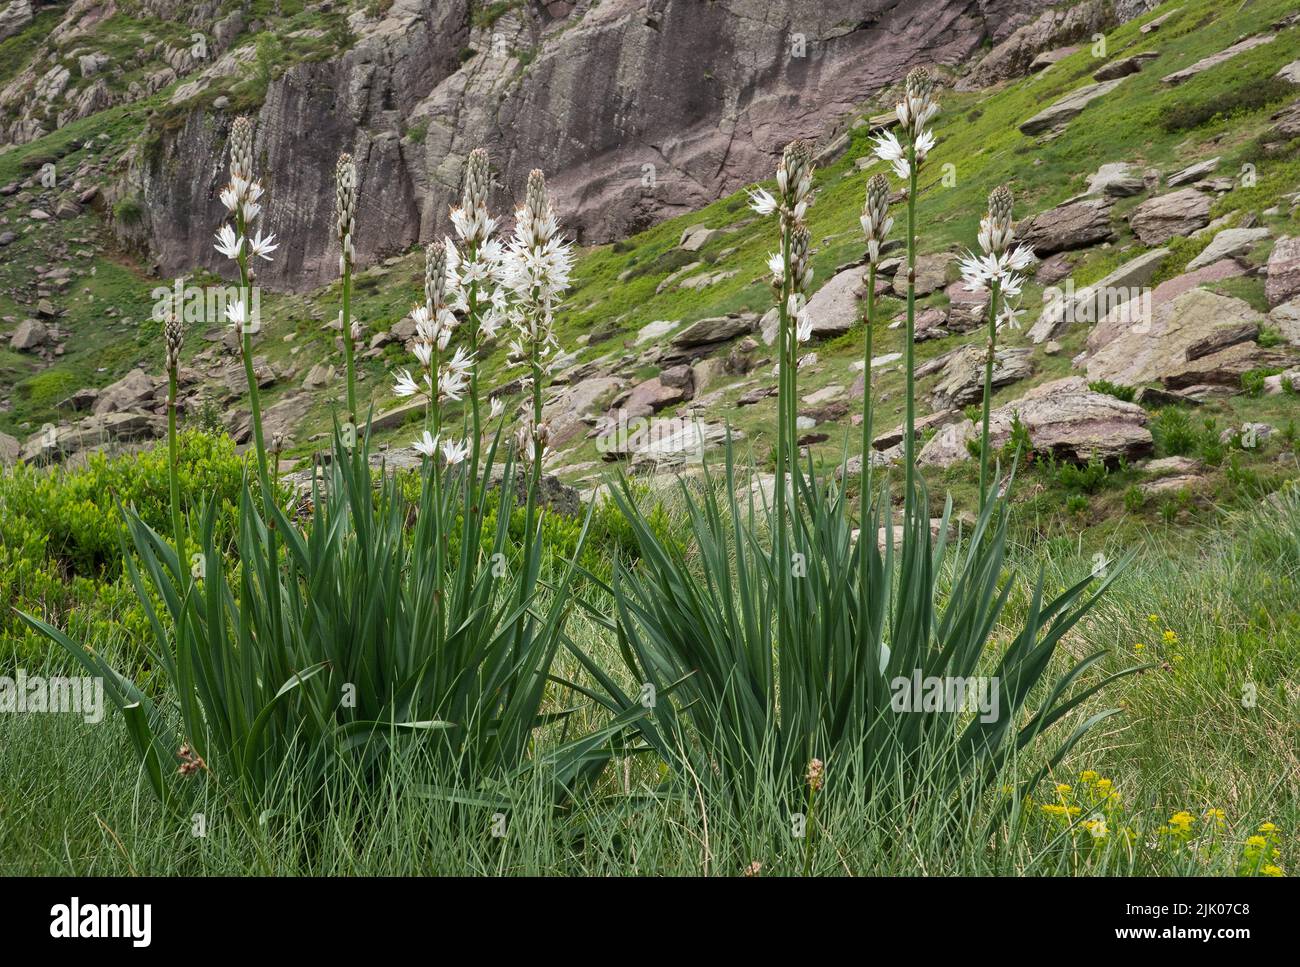 Asfodel bianco, piante con gambi lunghi e fiori bianchi, in paesaggio alpino Foto Stock